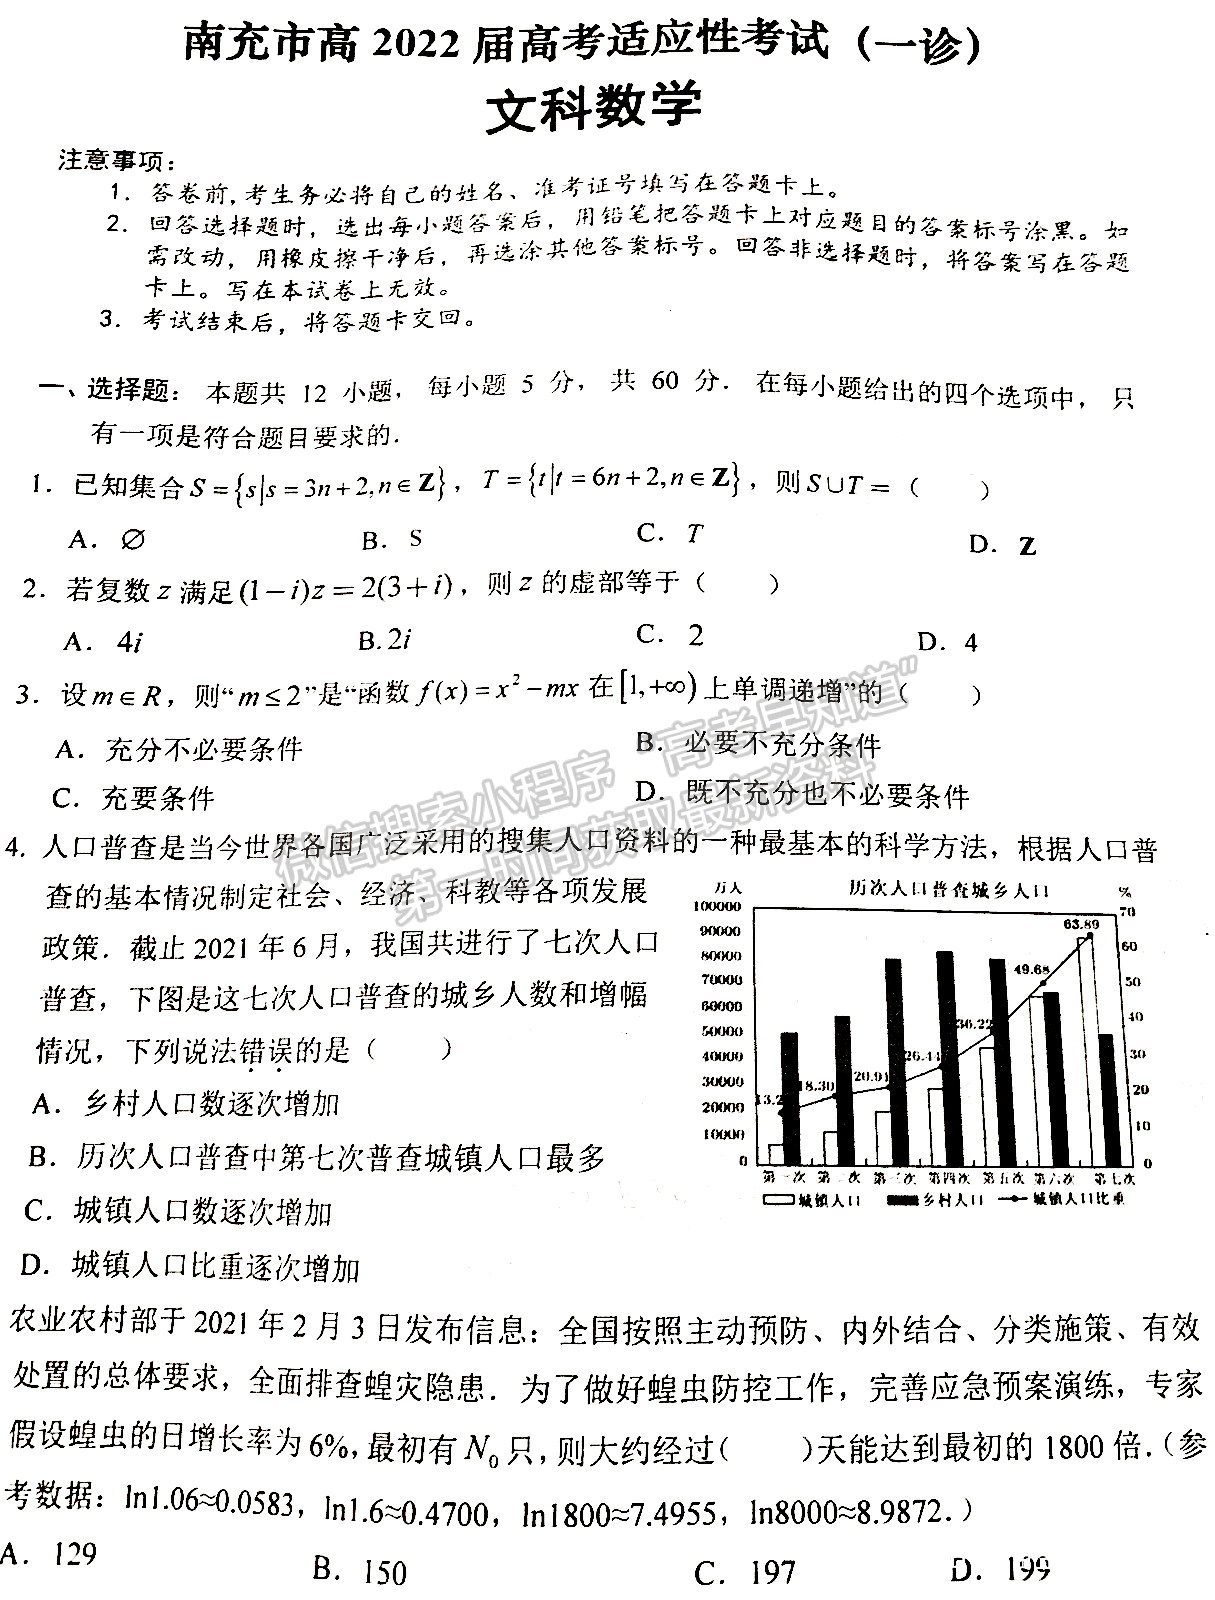 2022四川省南充市高2022届高考适应性考试（一诊）文科数学试题及答案